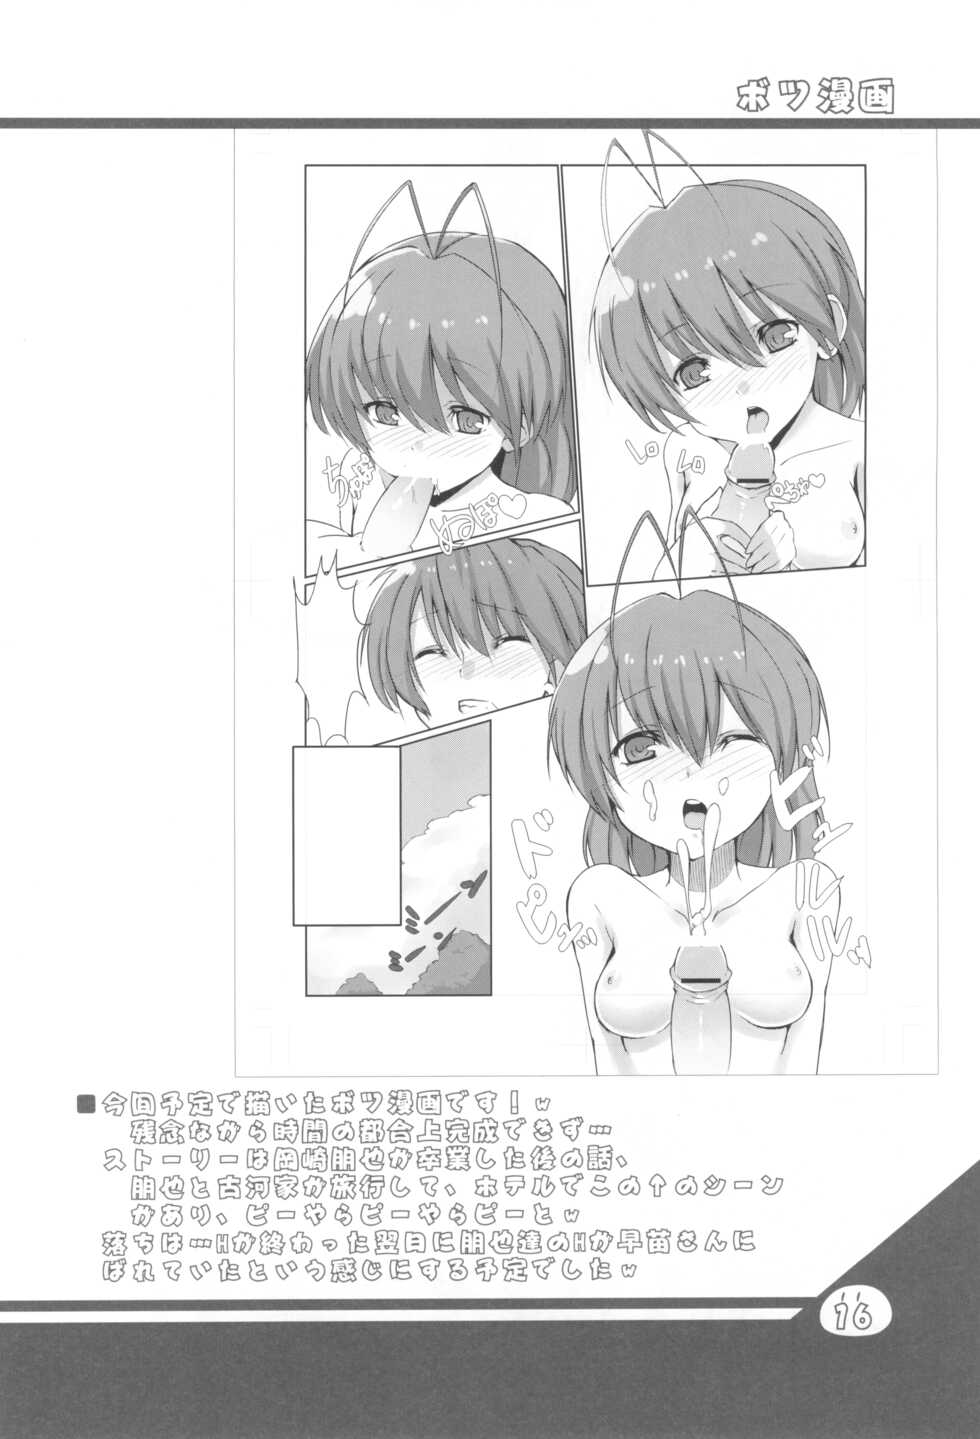 (C76) [Ki Kara Ochiru 3-Byou Mae (Yuuki Shin)] Konoha ga Ochiru 1-byou Mae (Clannad, K-On!) - Page 15